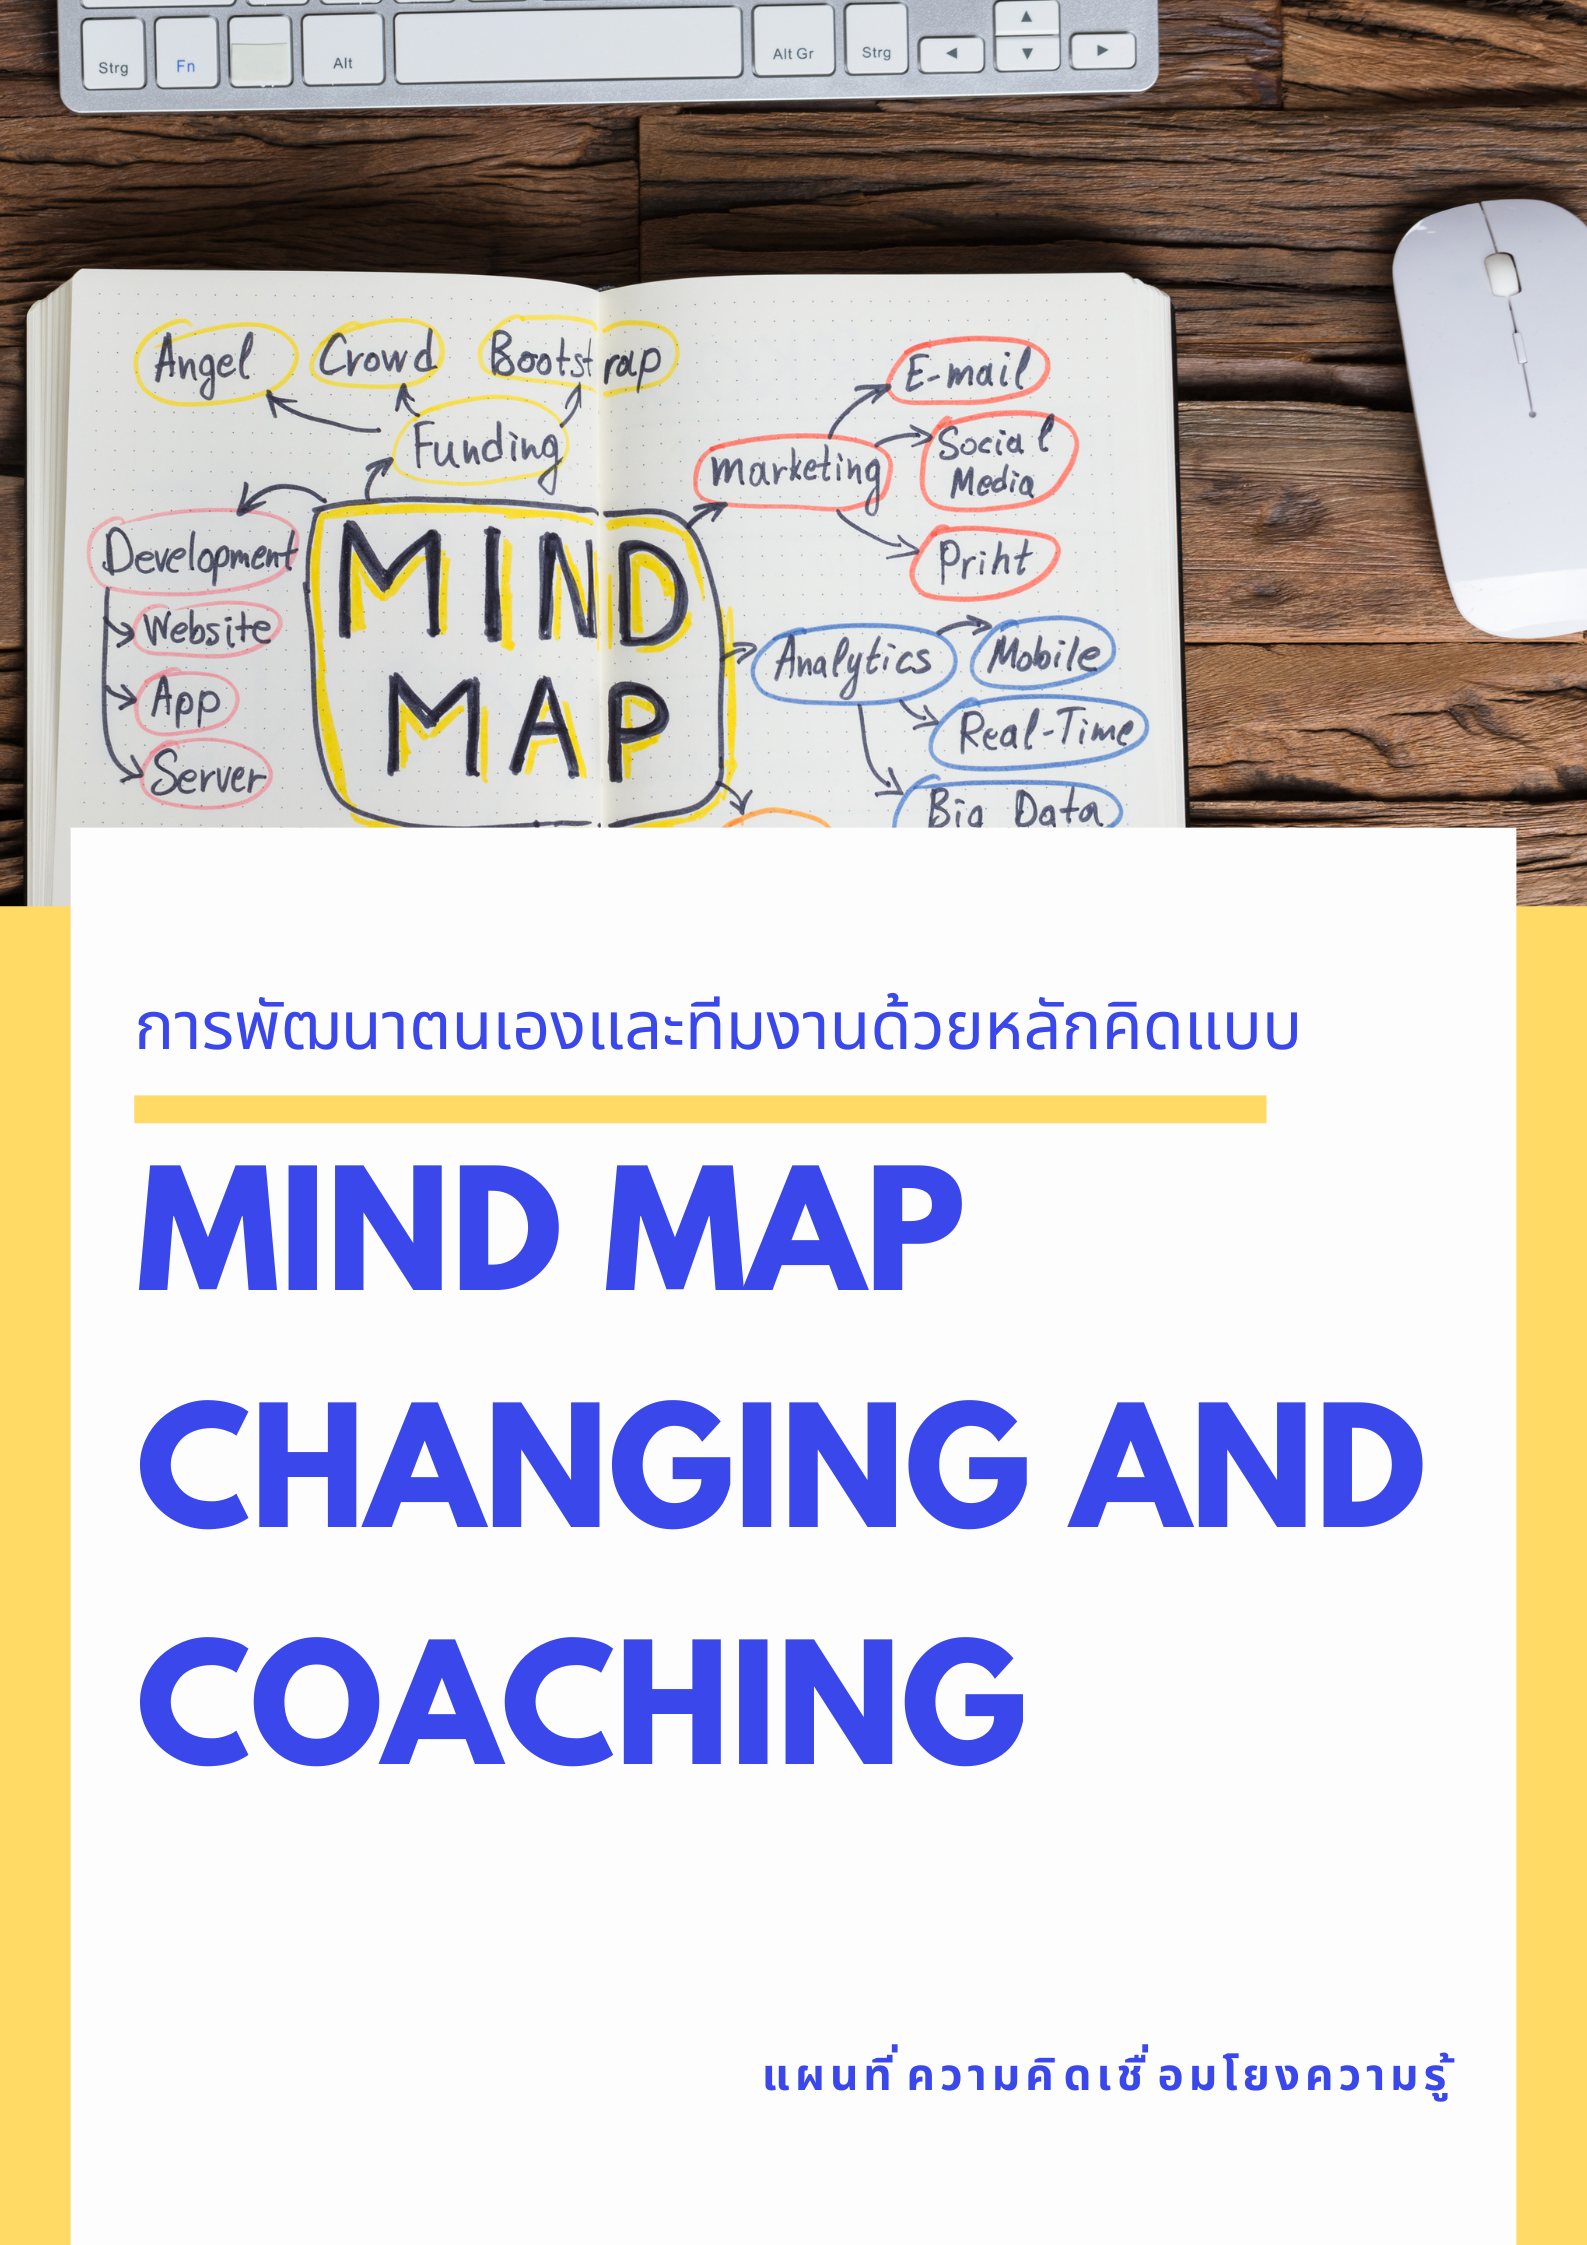 หลักสูตรอบรม หลักสูตร การพัฒนาตนเองและทีมงานด้วยหลักคิดแบบ Mind Map-Changing and Coaching